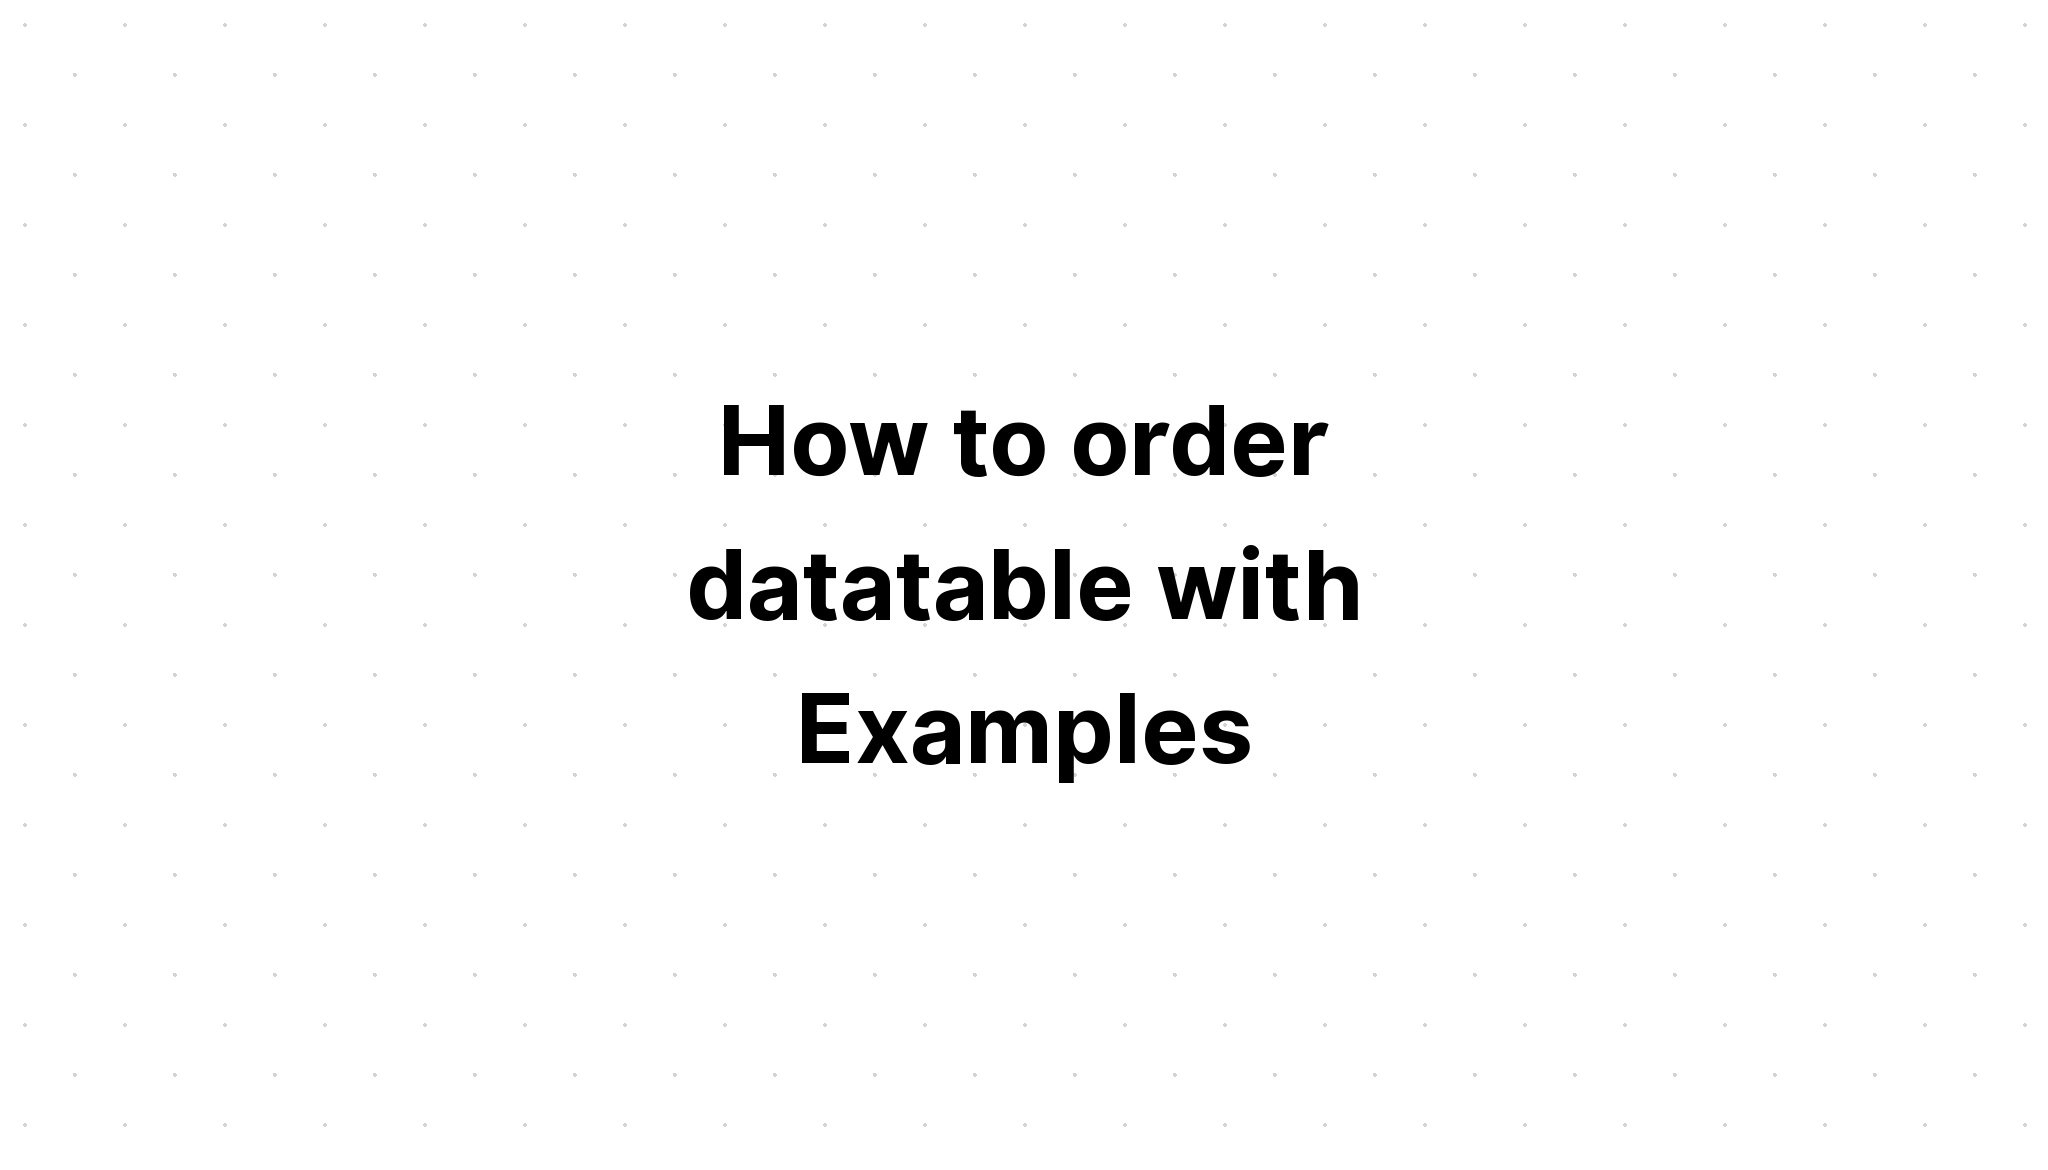 Cách đặt hàng dữ liệu với các ví dụ